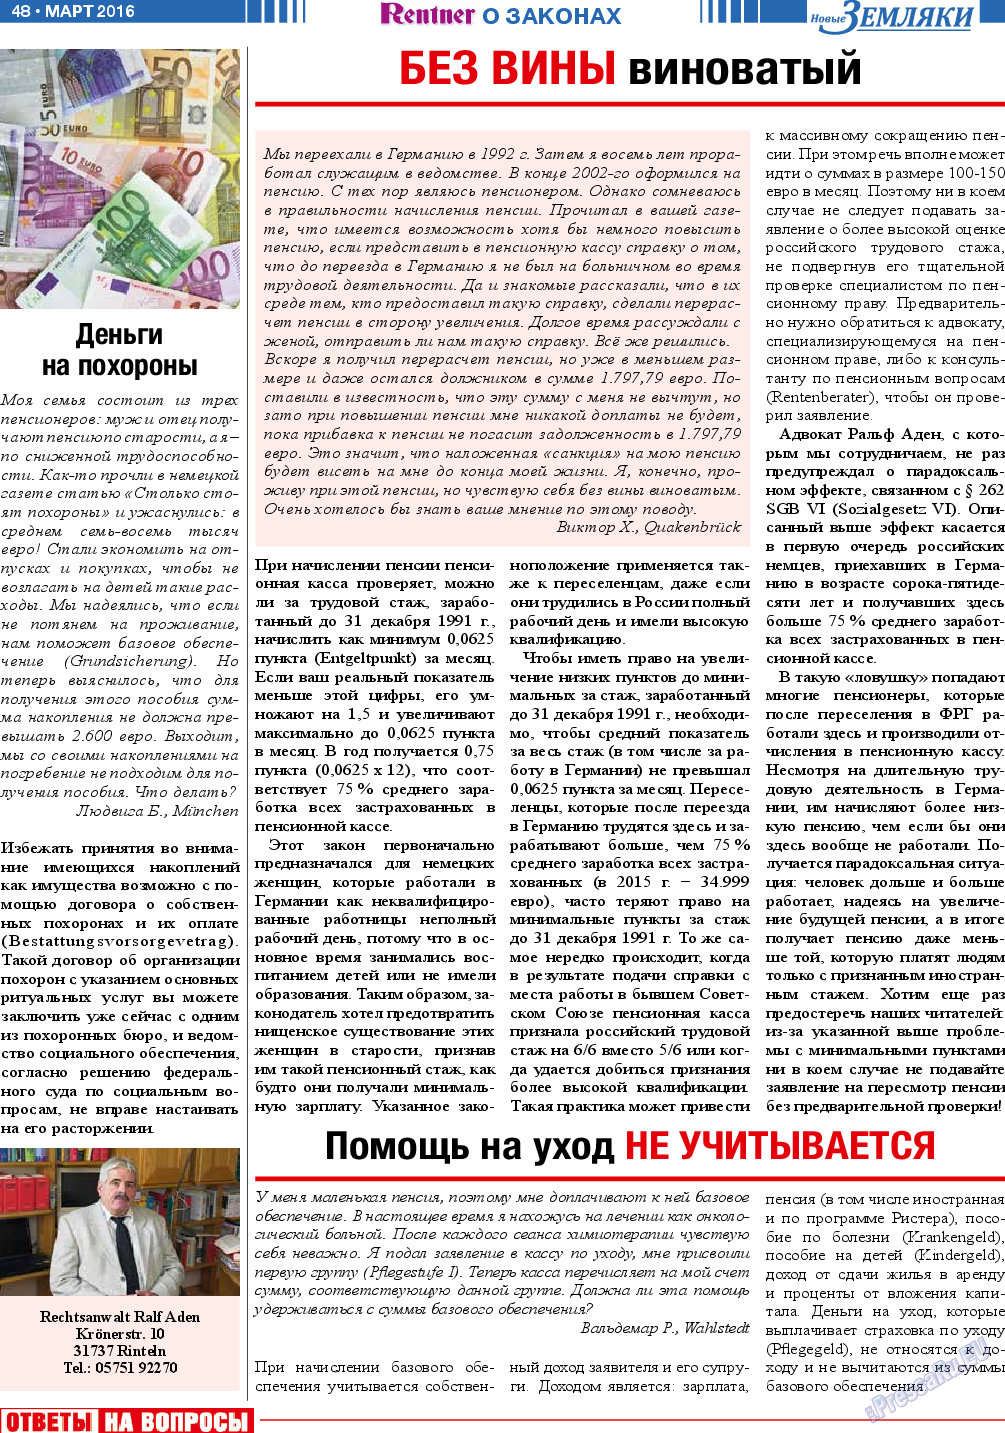 Новые Земляки, газета. 2016 №3 стр.48